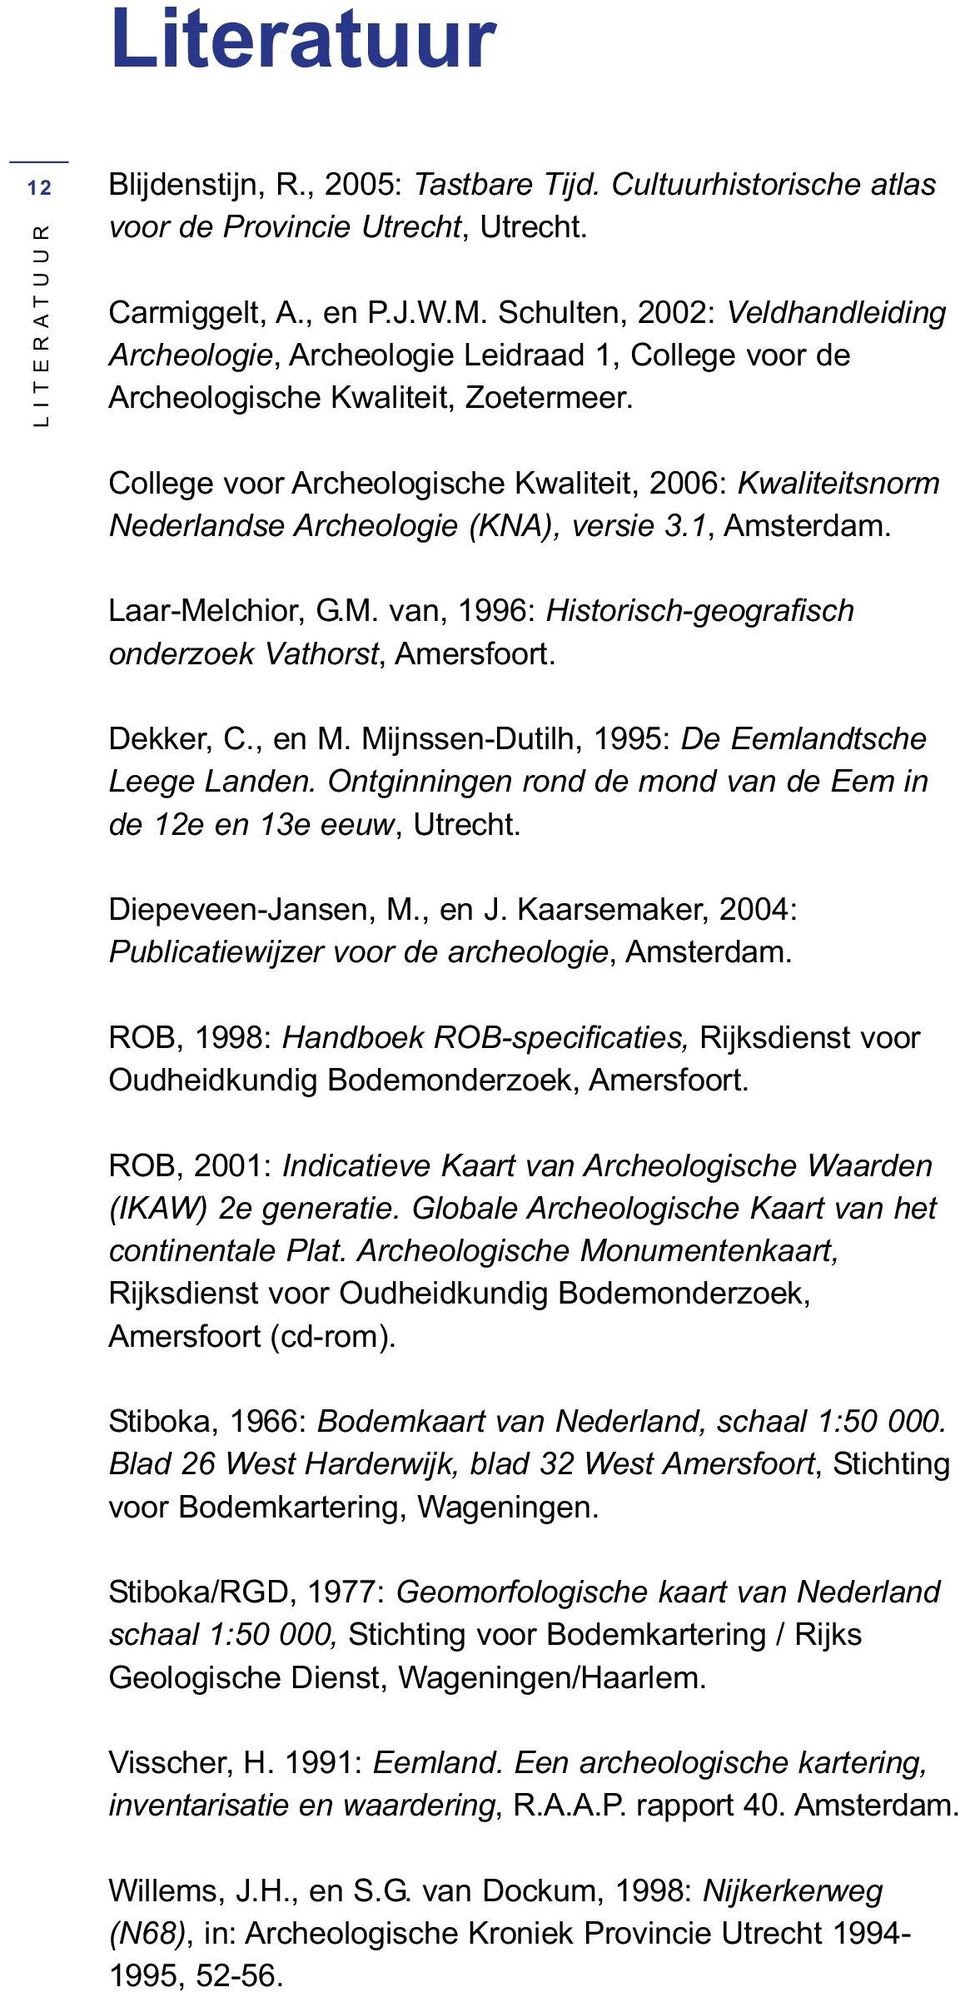 College voor Archeologische Kwaliteit, 2006: Kwaliteitsnorm Nederlandse Archeologie (KNA), versie 3.1, Amsterdam. Laar-Melchior, G.M. van, 1996: Historisch-geografisch onderzoek Vathorst, Amersfoort.